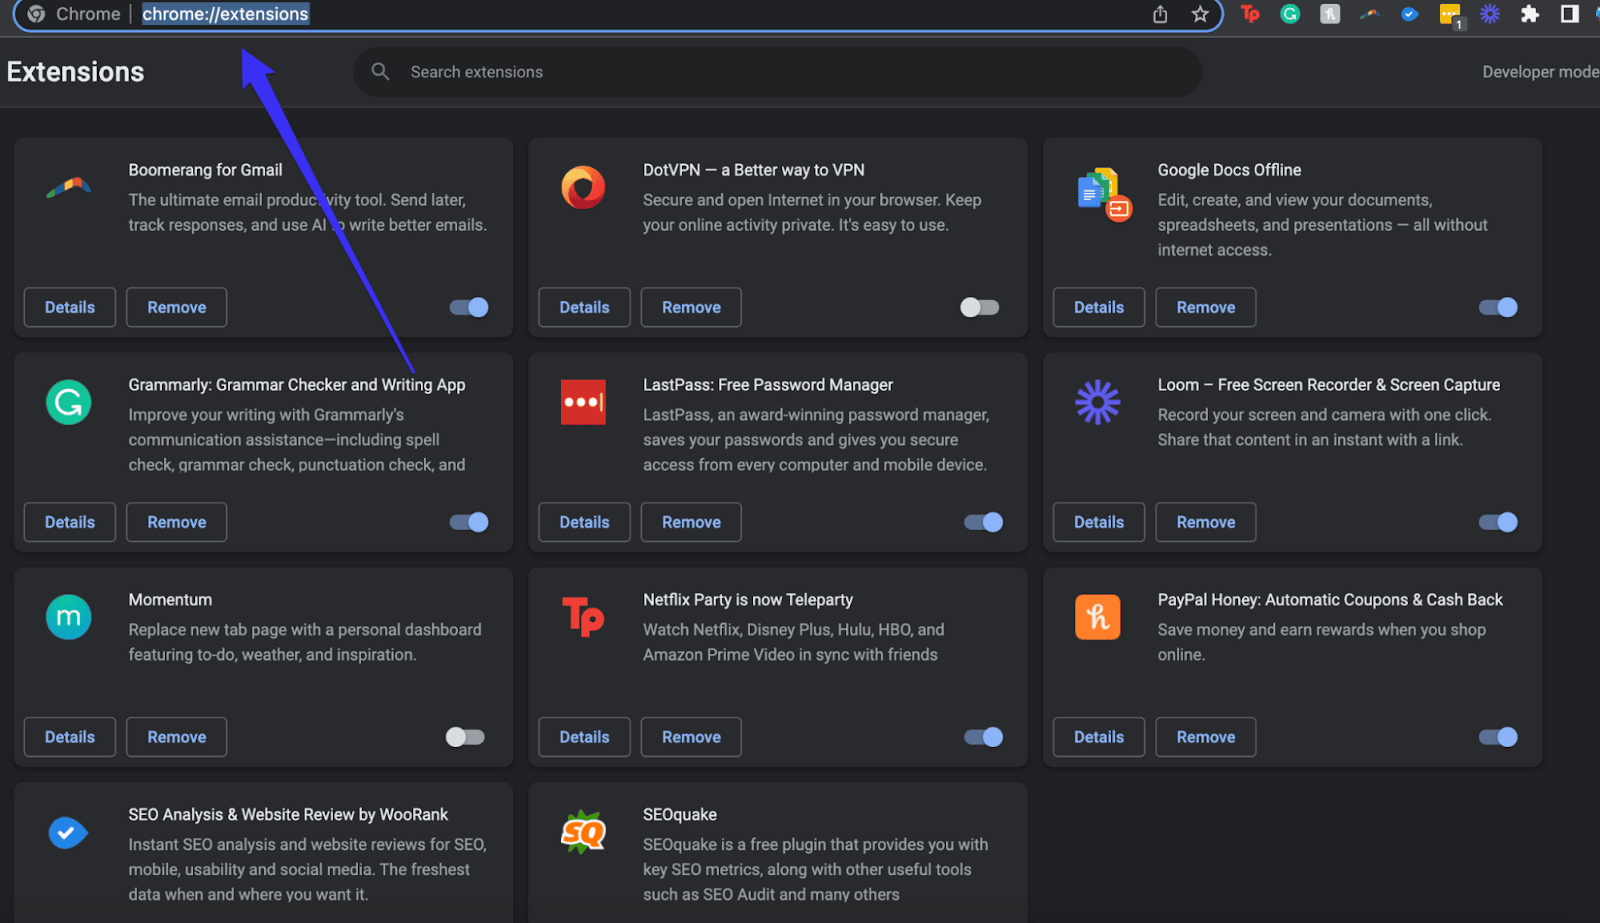 Je kunt gemakkelijk naar de hub voor Chrome extensies